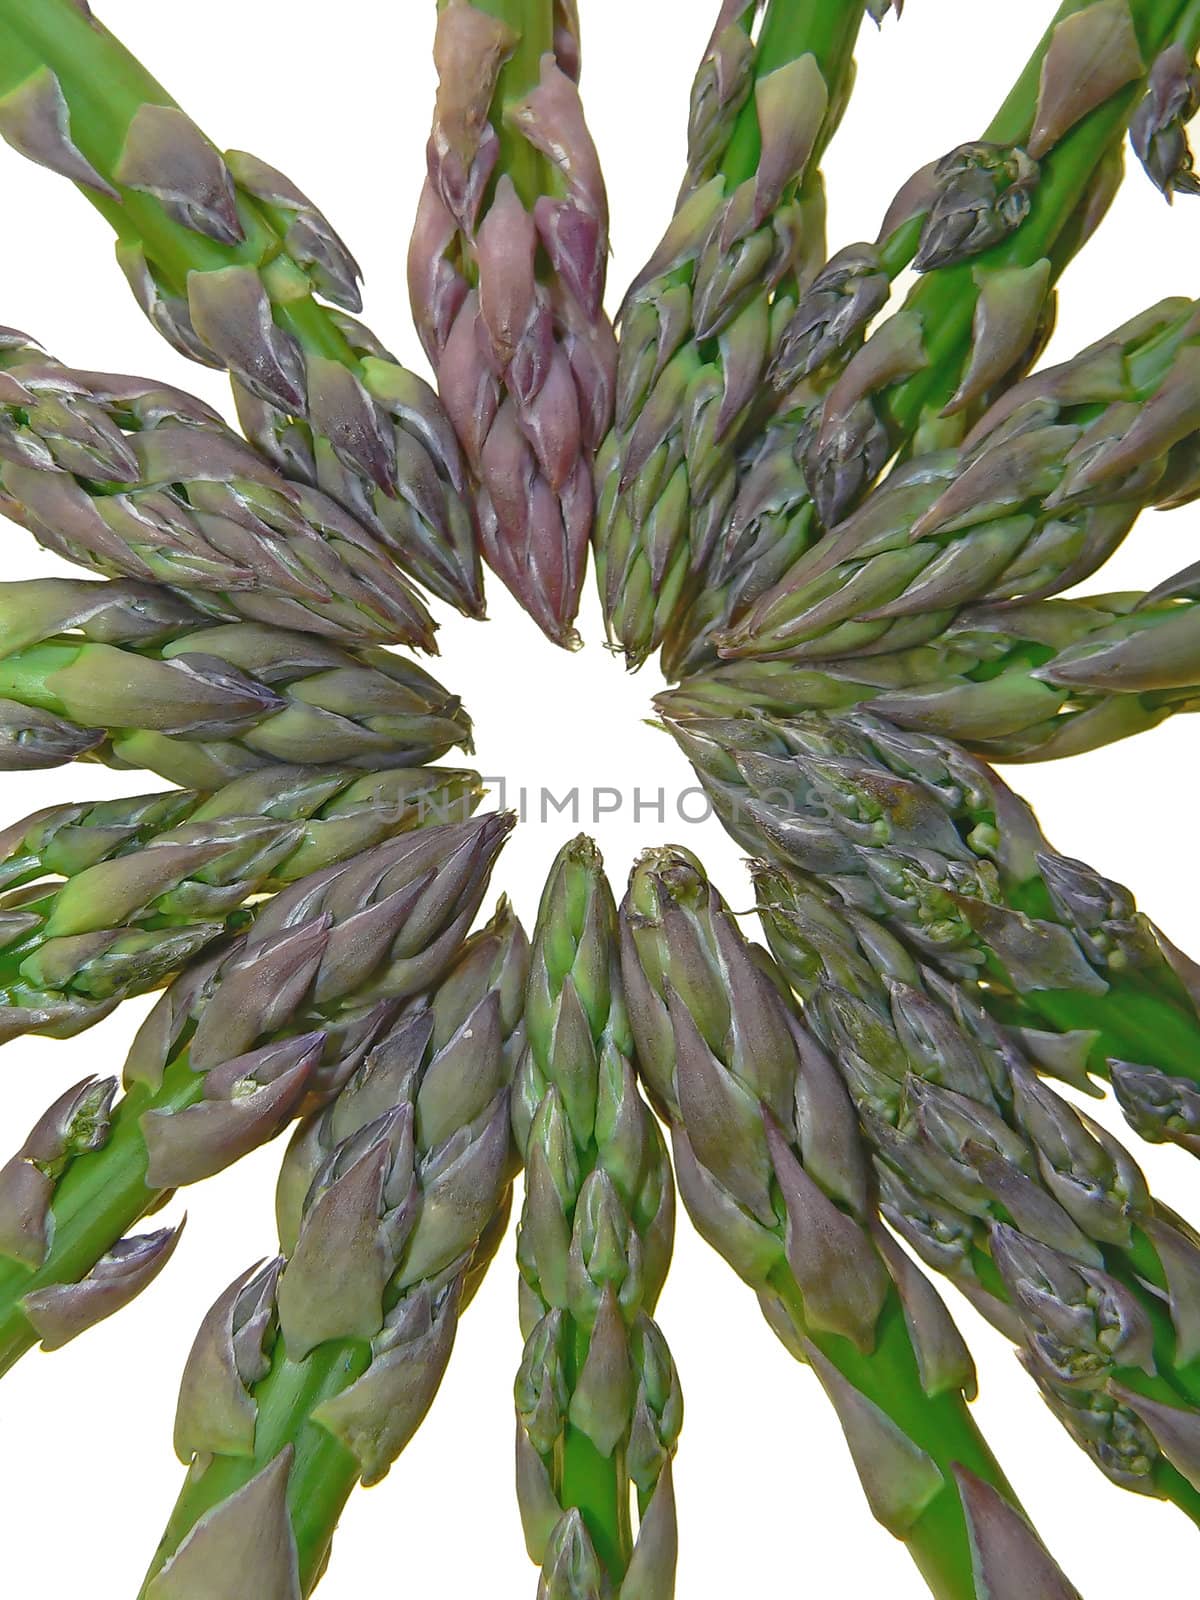 a few asparagus close up